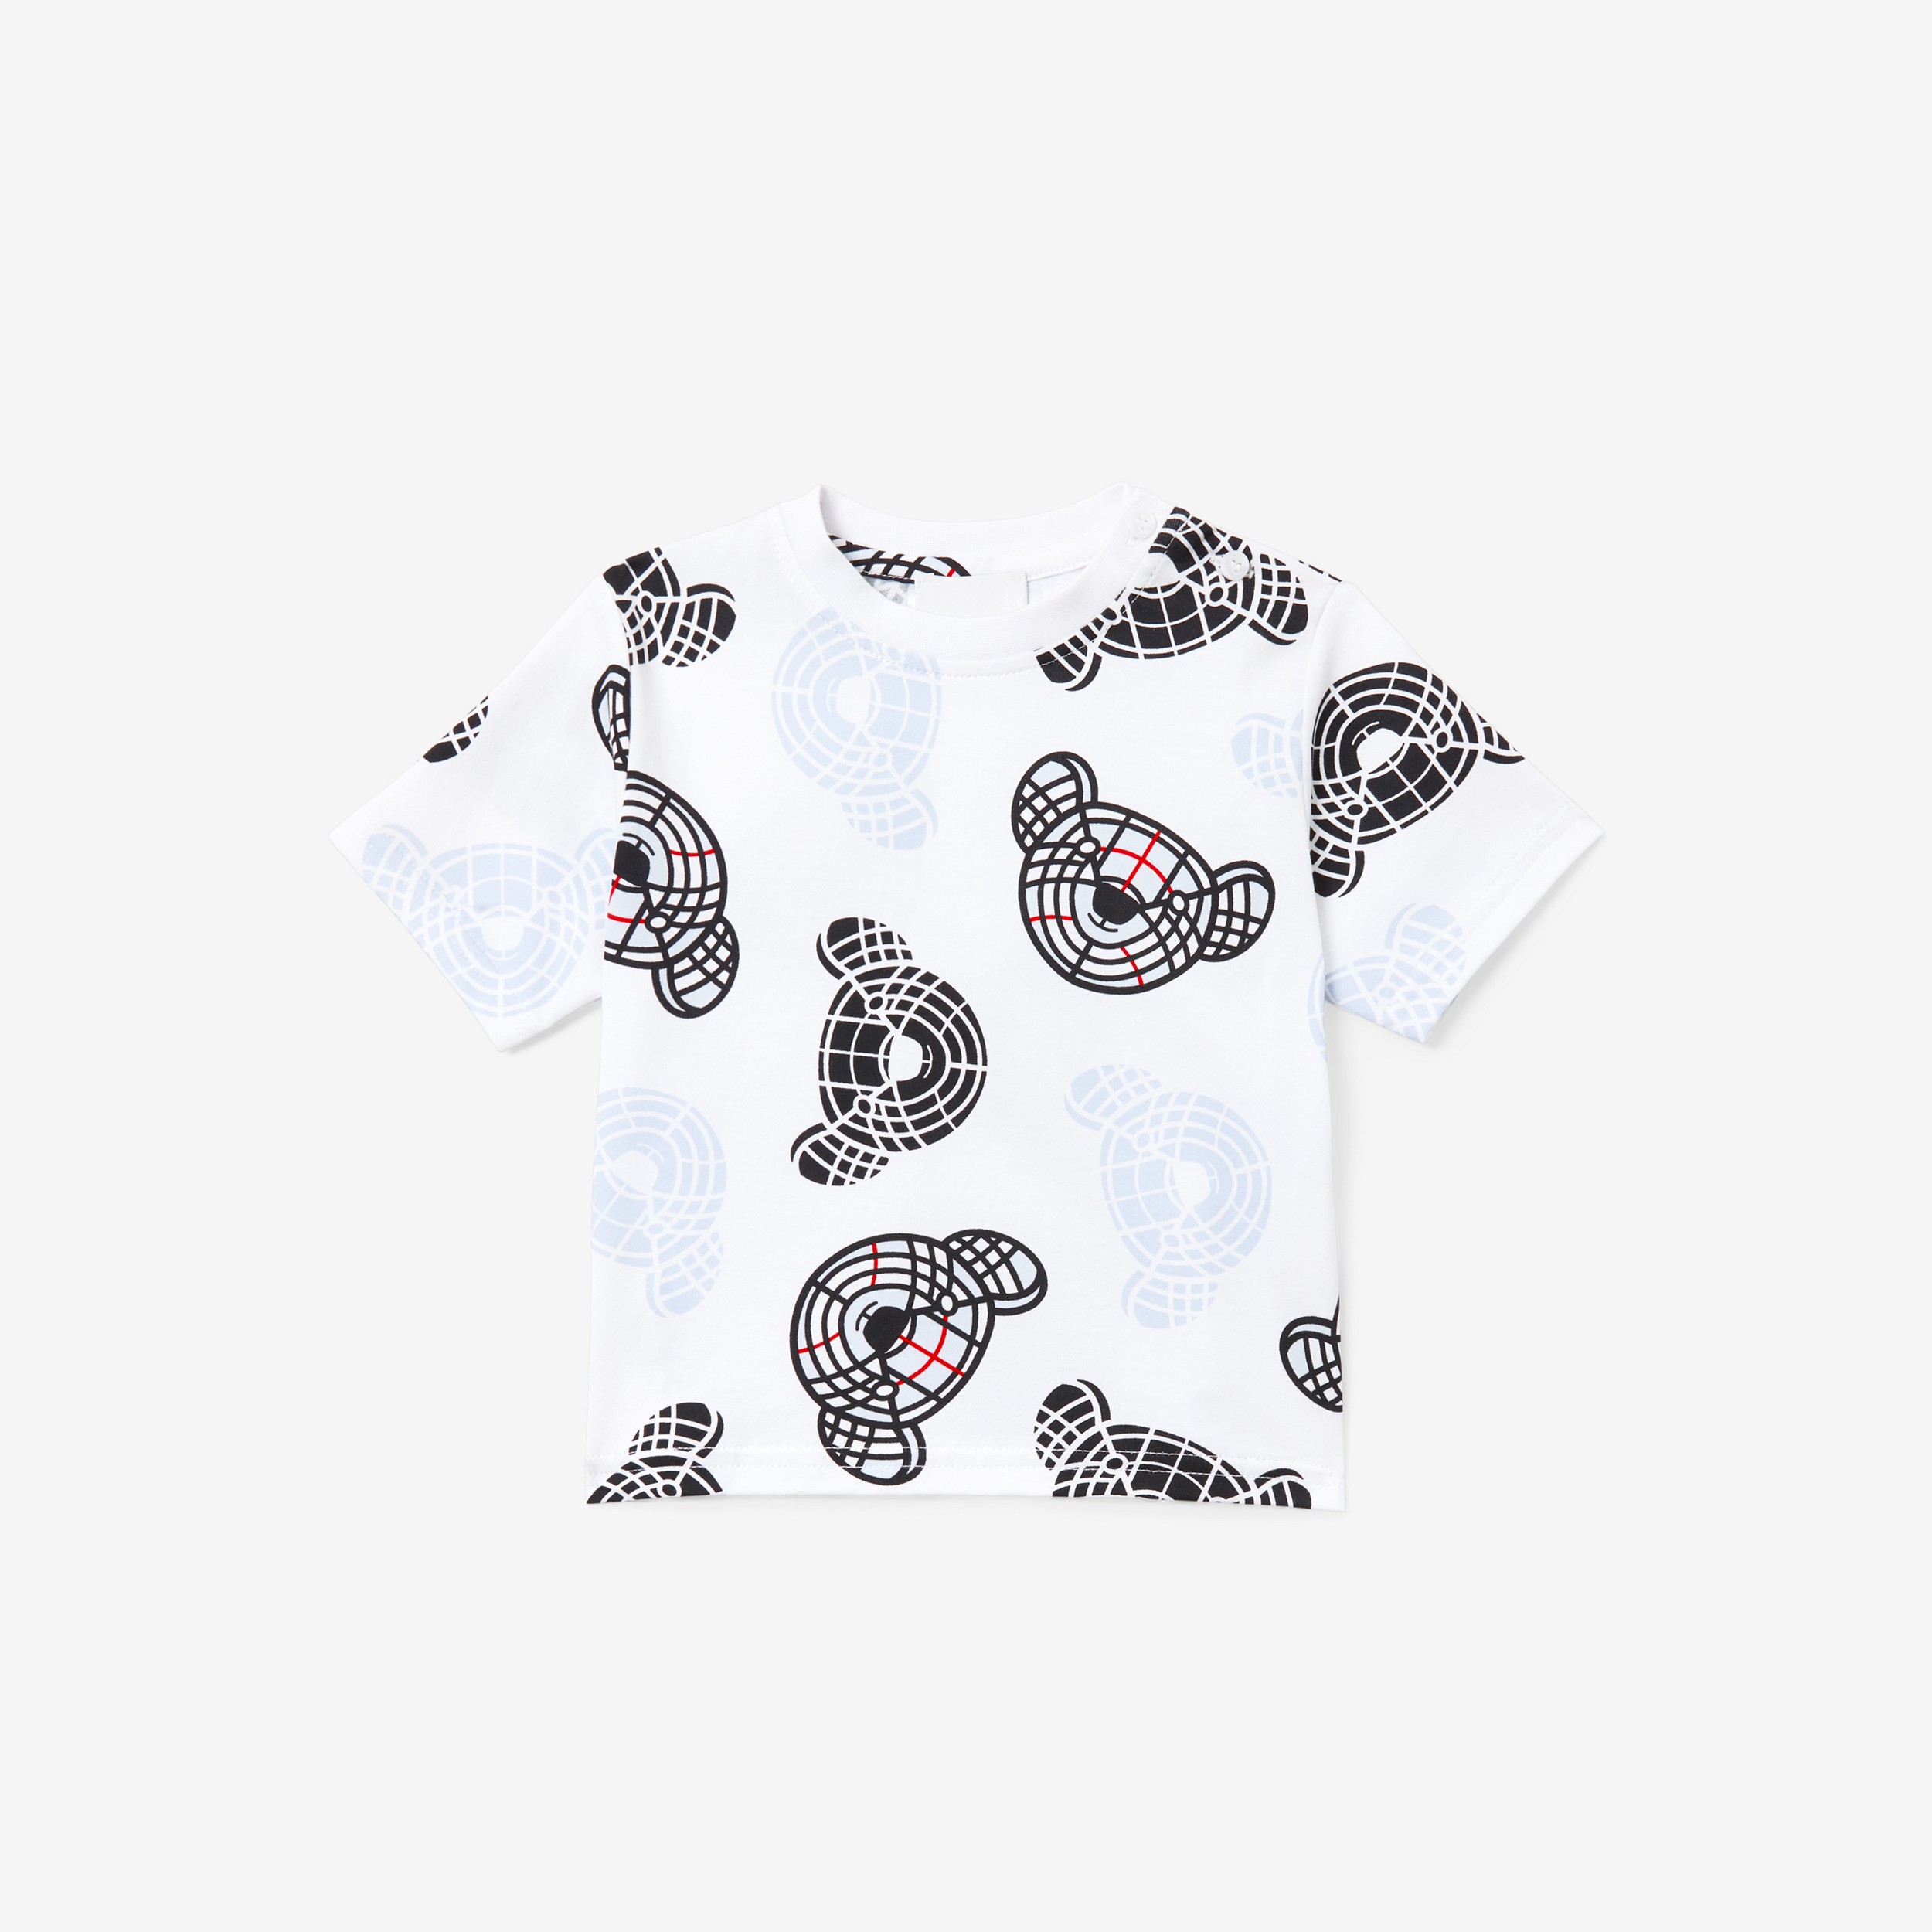 T-shirt en coton à imprimé Thomas Bear (Blanc) - Enfant | Site officiel Burberry® - 1